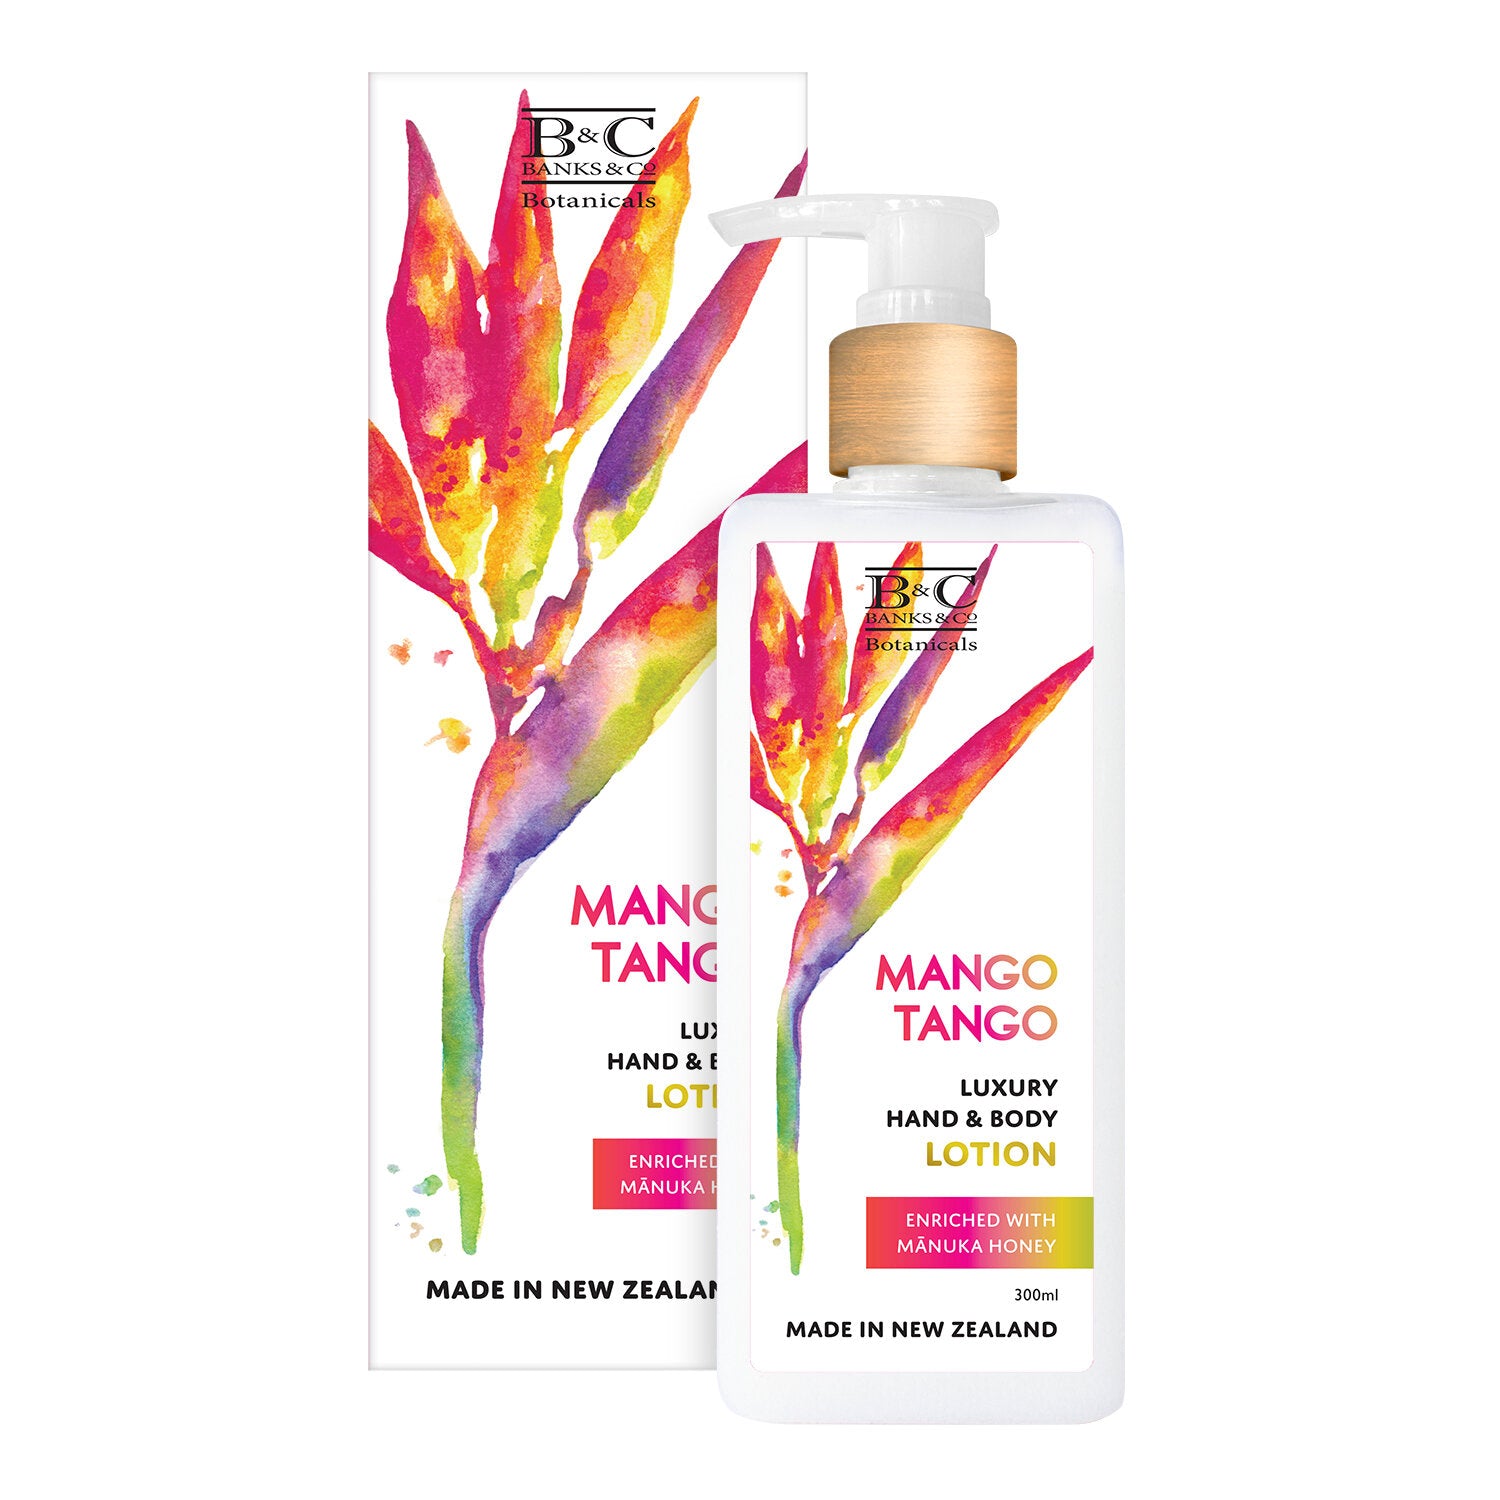 Banks & Co. - Luxury Hand & Body Lotion - Mango Tango